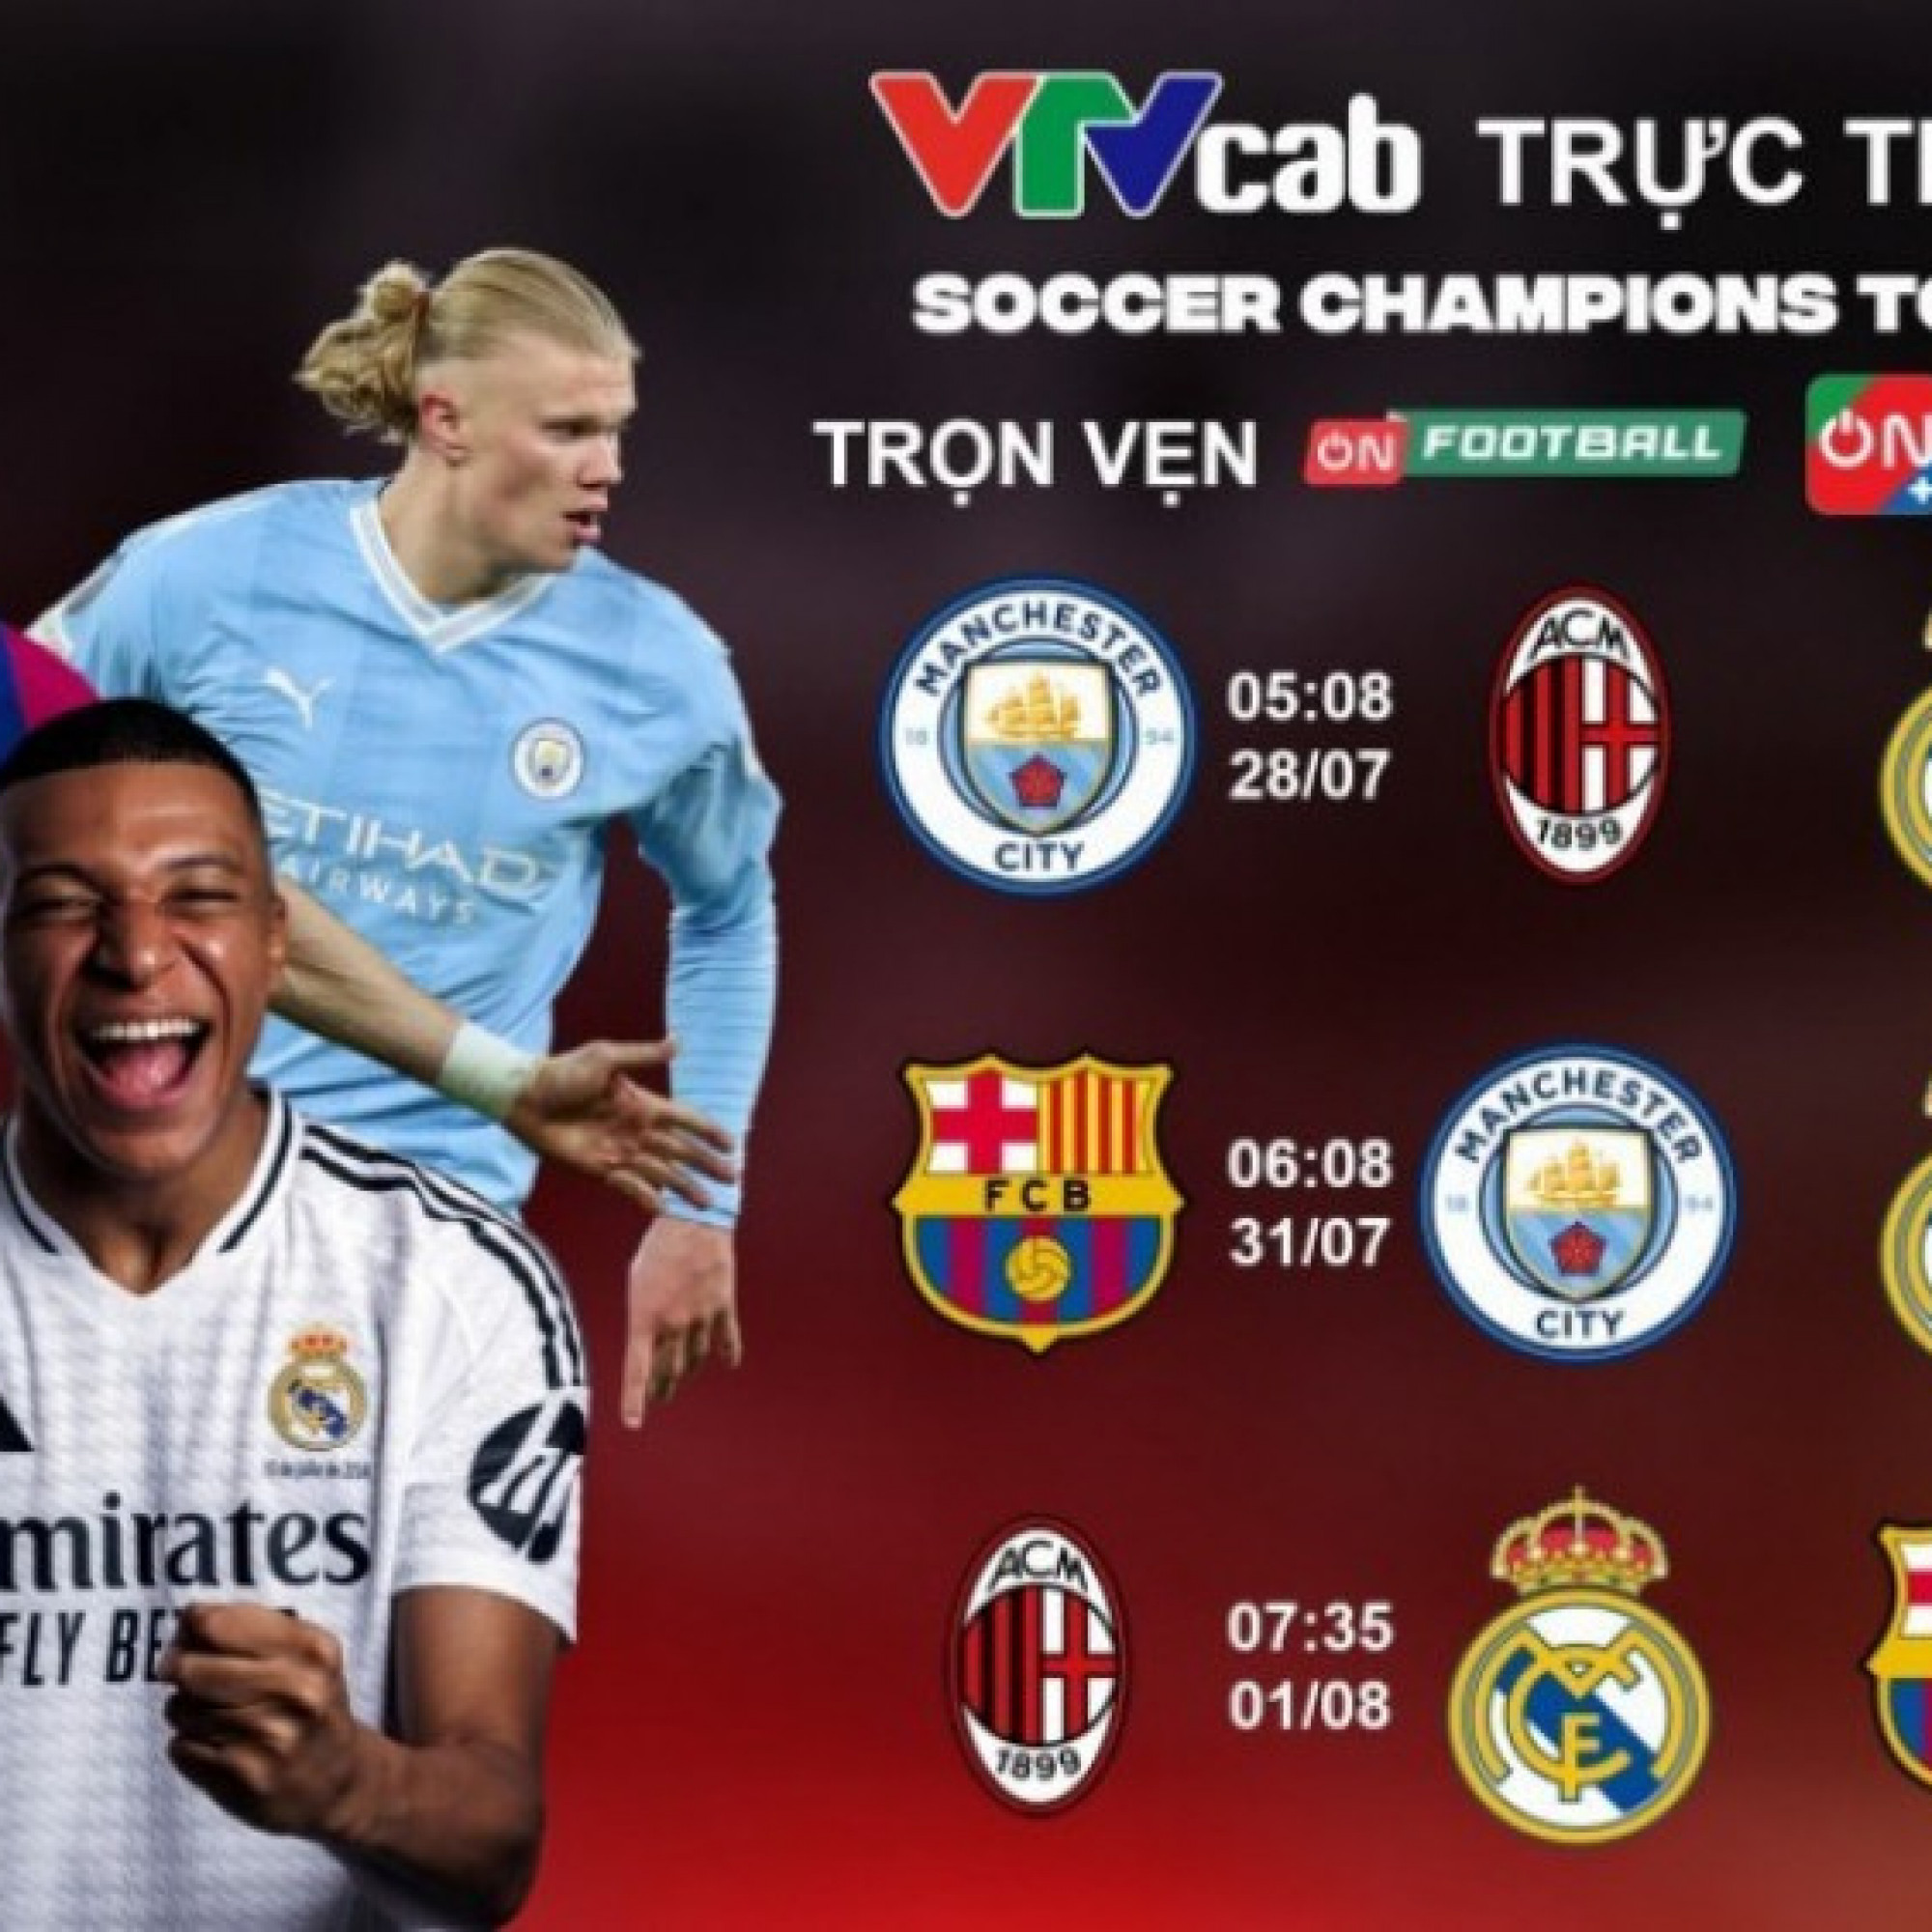  - VTVcab trực tiếp Tour du đấu Siêu kinh điển của Real Madrid, Barca, Man City